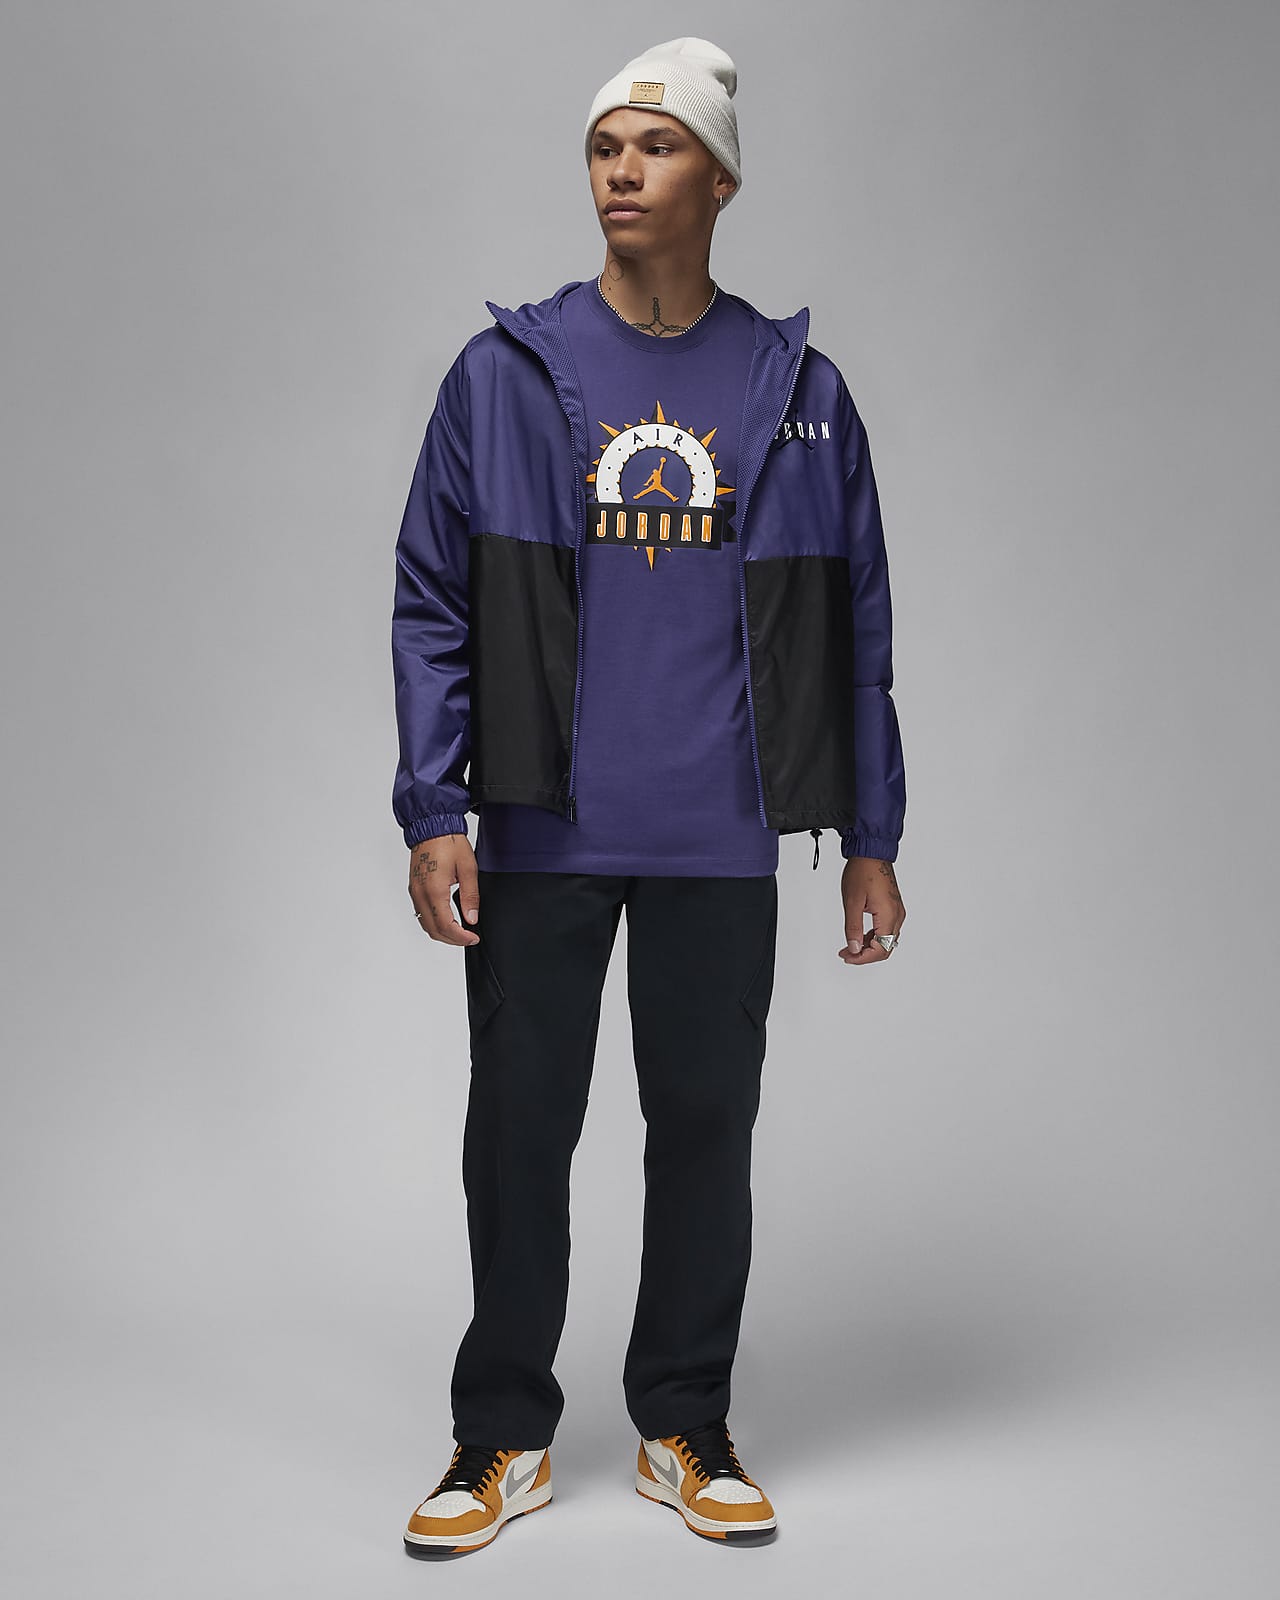 Jordan Essentials Men's Puffer Jacket. Nike IL